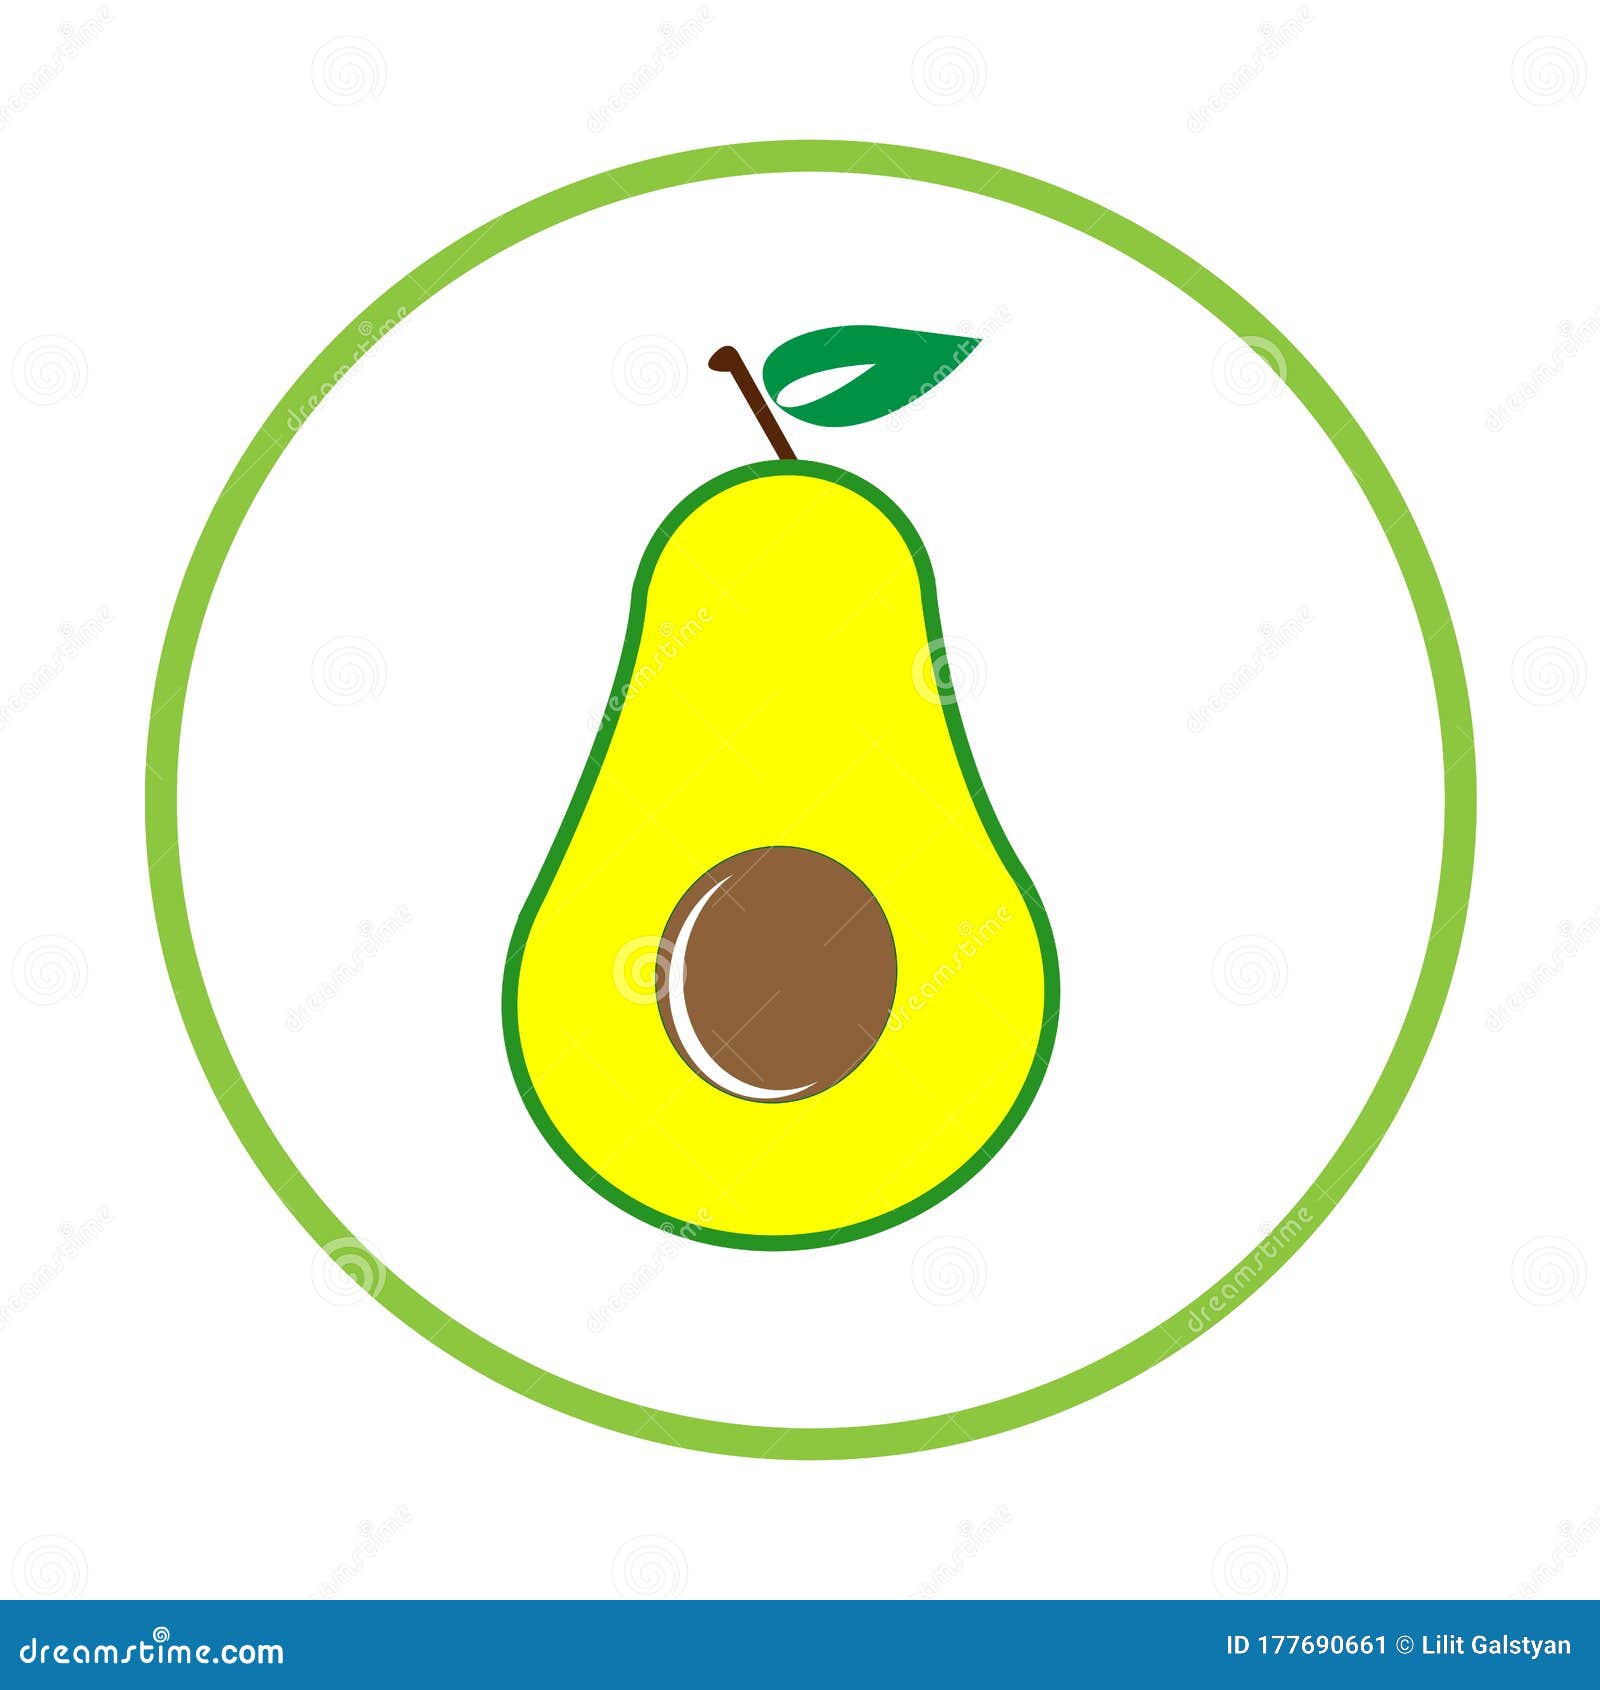 Download Cute Avocado Cartoon Illustration Vector Stock Vector ...